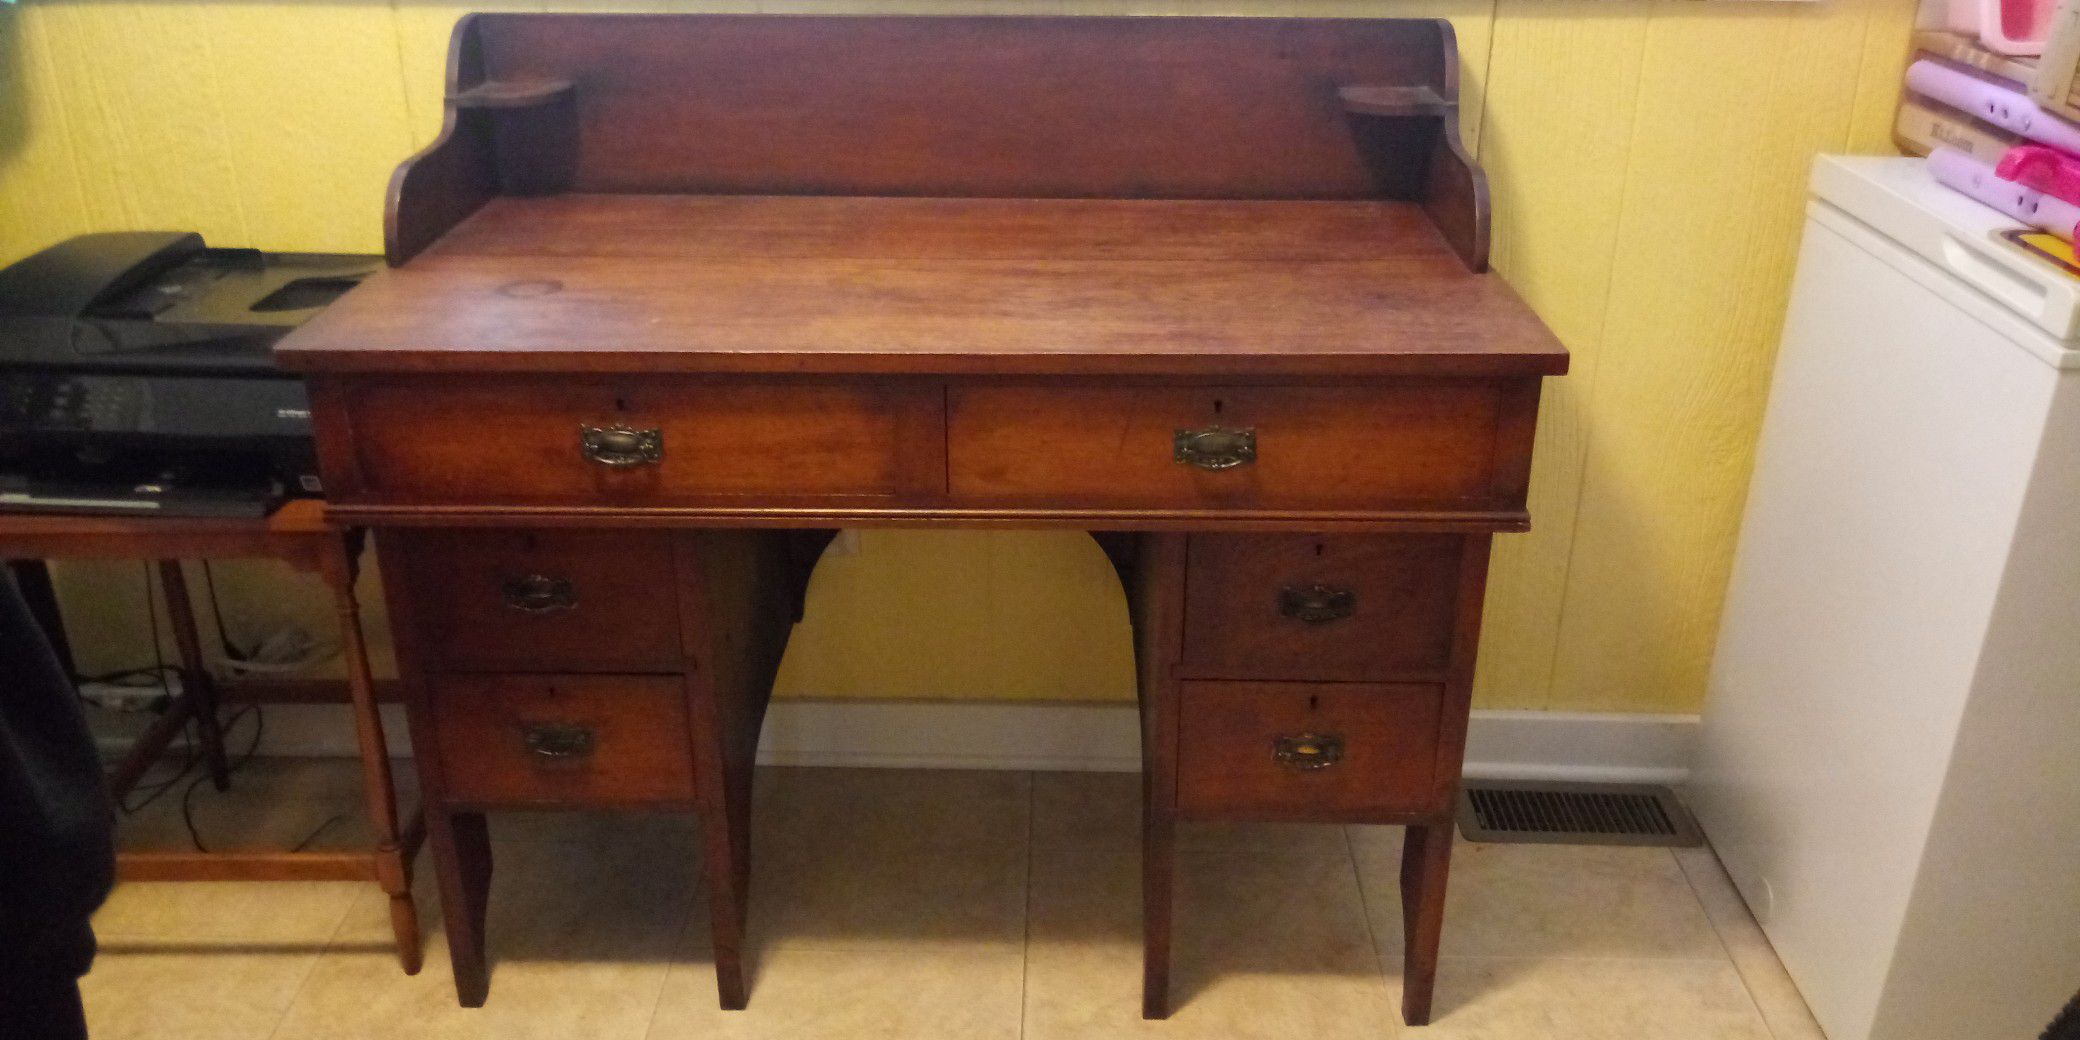 Antique desk 1800s maybe even older